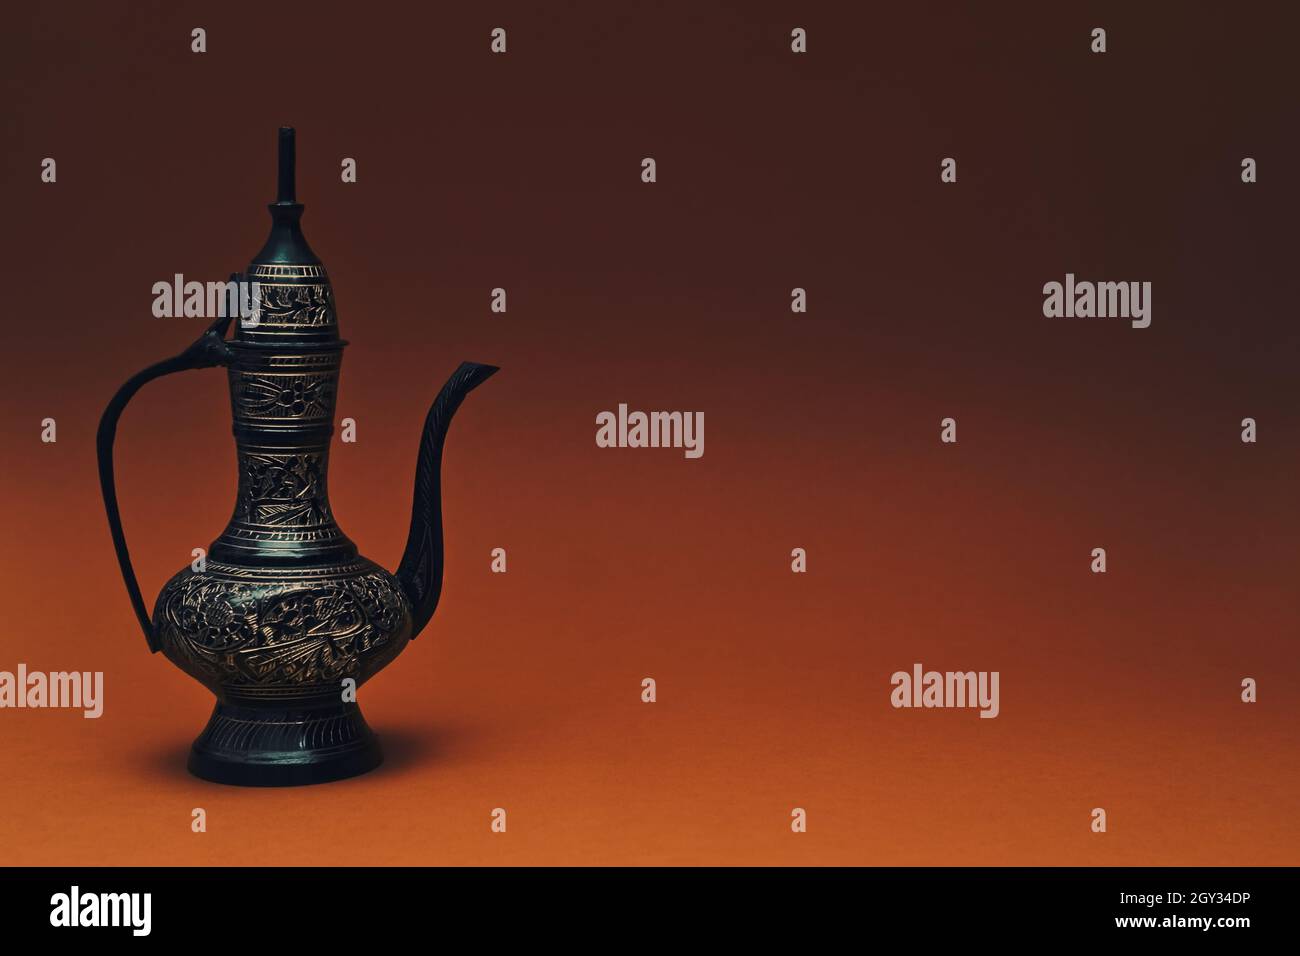 Vintage traditionelle islamische orientalische gravierte Kanne handgefertigt auf dunkelorangenen Hintergrund. Eleganter arabischer antiker großer Metallkrug, Kopierraum. Stockfoto